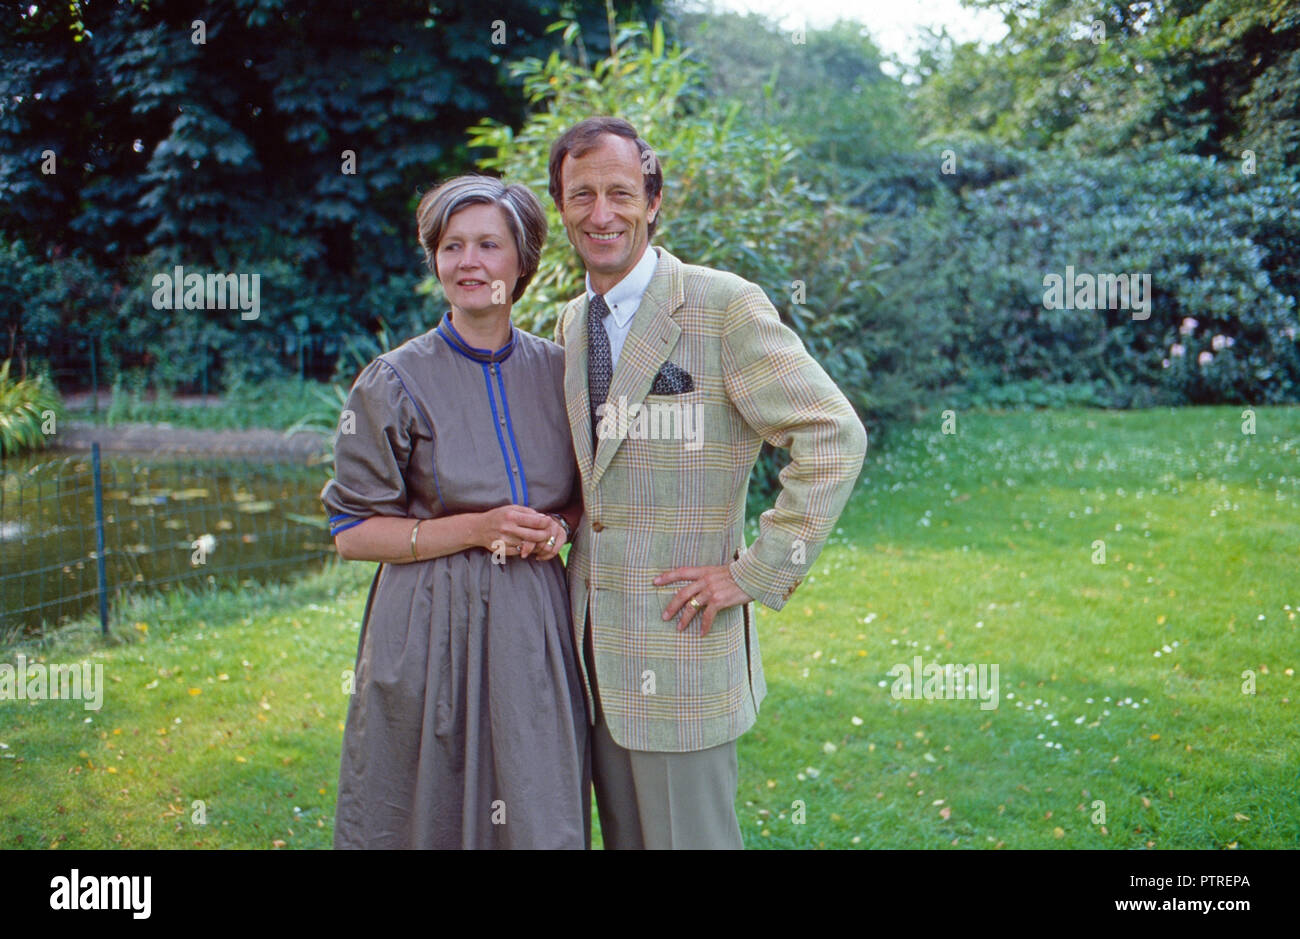 Historiker Friedrich Wilhelm Prinz von Preußen mit Gemahlin Ehrengard im Garten à Brême, Allemagne 1984. L'historien Friedrich Wilhelm de Prusse avec son épouse Ehrengard dans le jardin de leur maison à Brême, Allemagne 1984. Banque D'Images